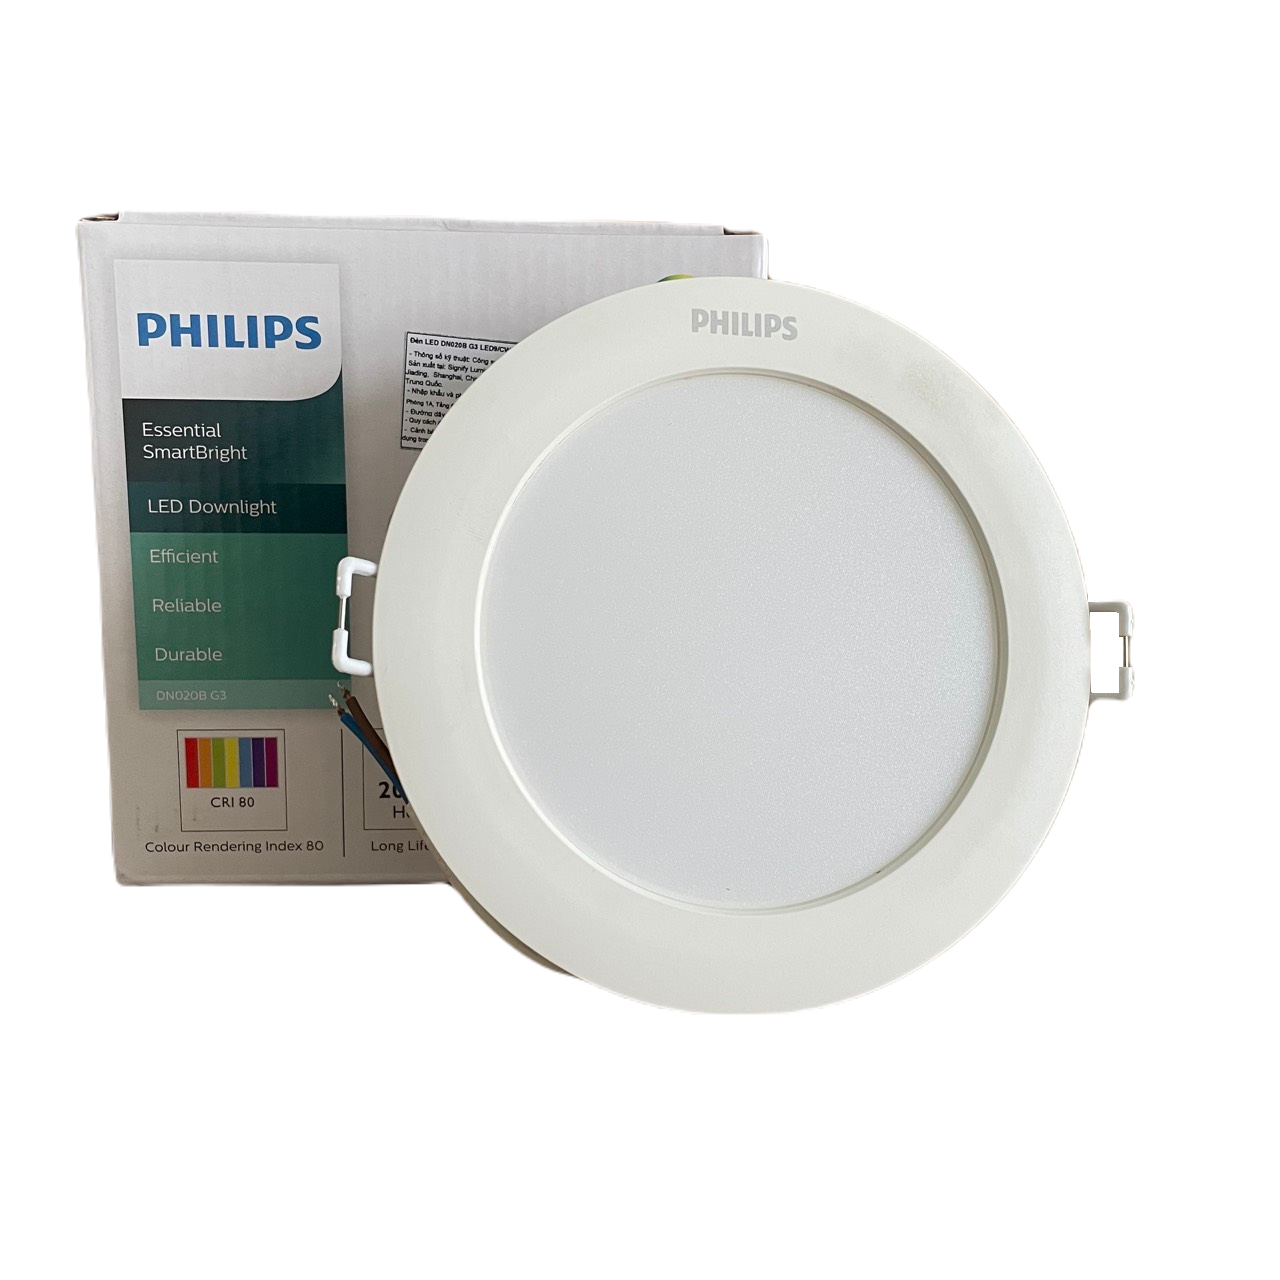 Đèn downlight âm trần LED Philips Essential SmartBright DN020B G3 LED15/NW 18W 220-240V D175 GM